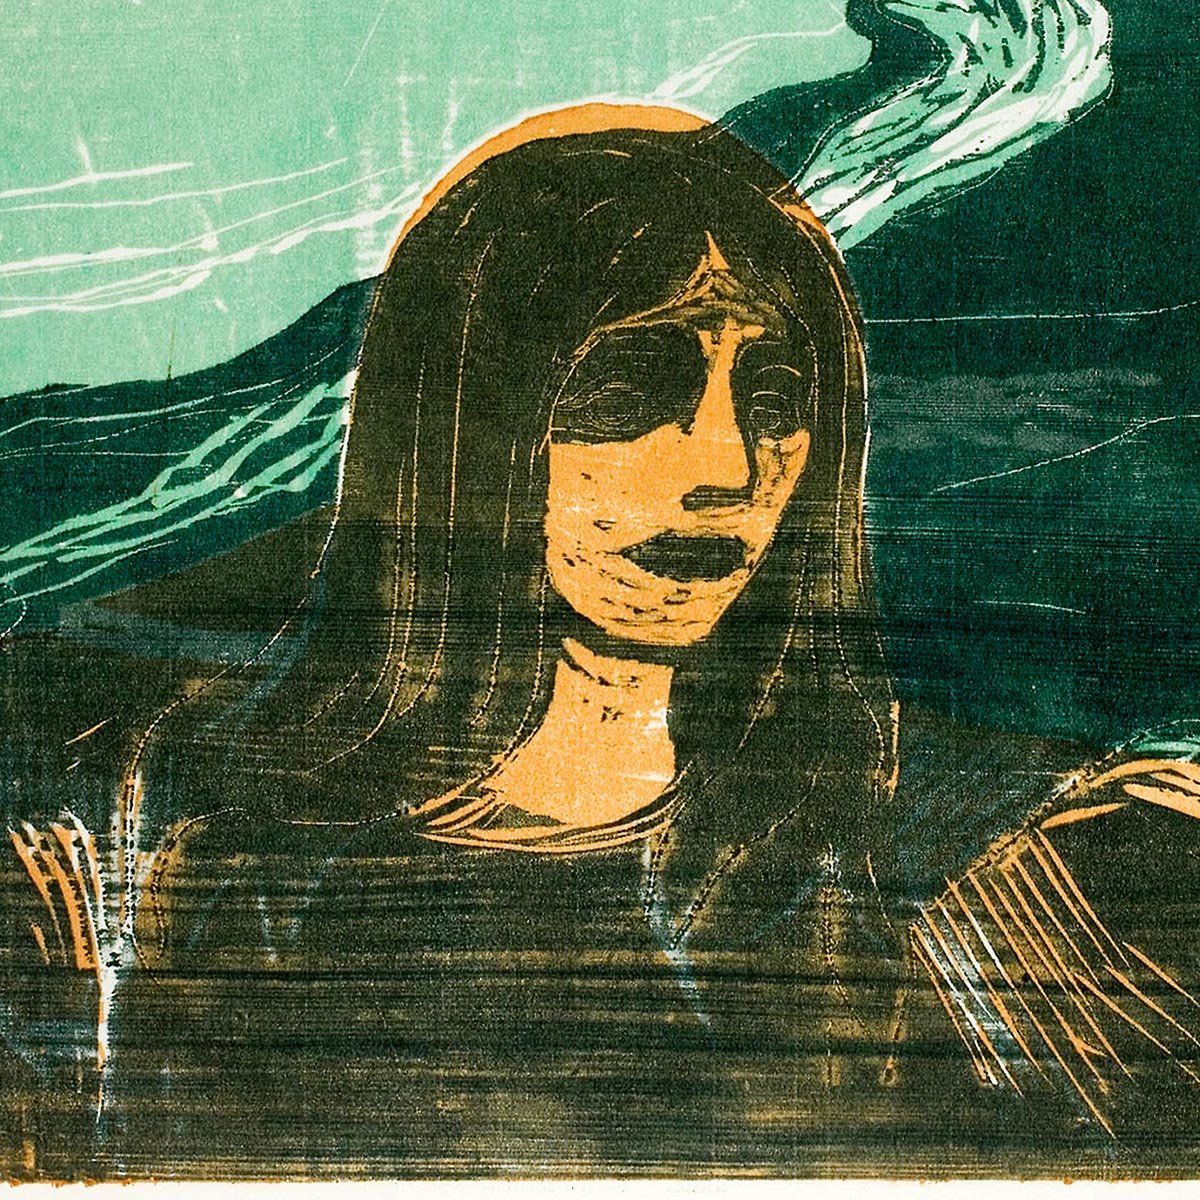 Edvard Munch Against the Shore Art Poster